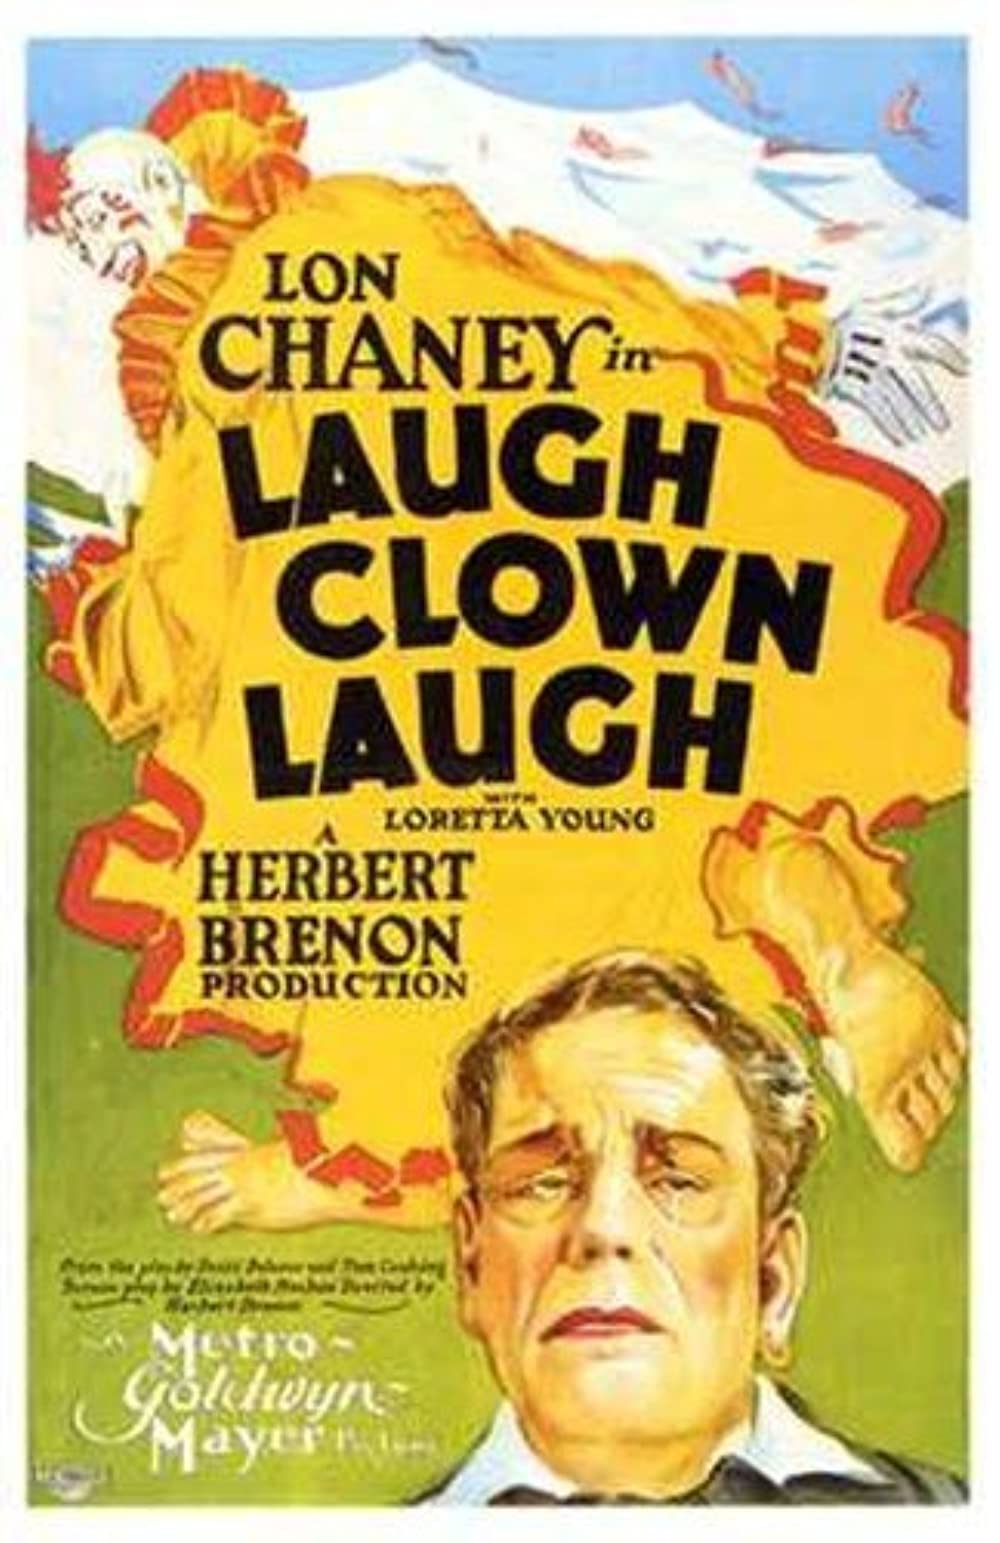 Filmbeschreibung zu Laugh, Clown, Laugh